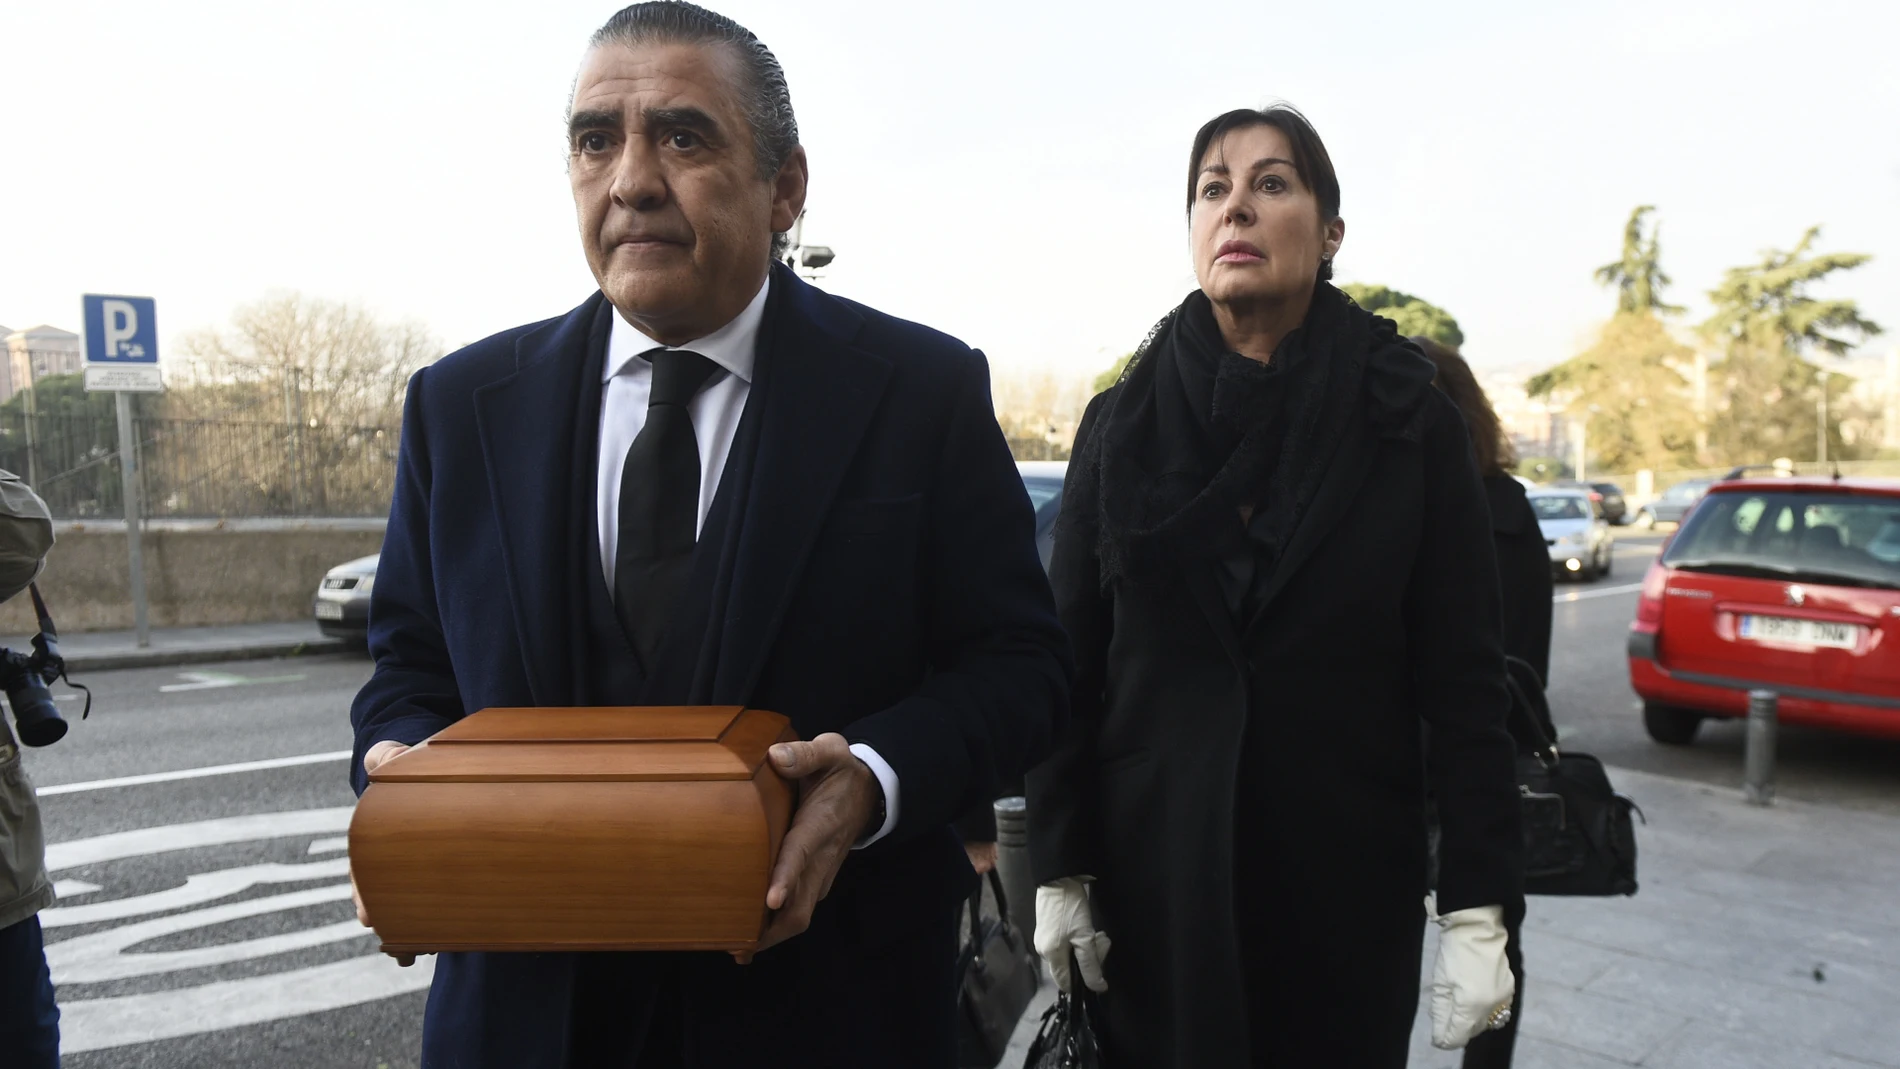 Jaime y Carmen Martínez Bordiú durante el entierro de Carmen Franco en Madrid. GTres Online